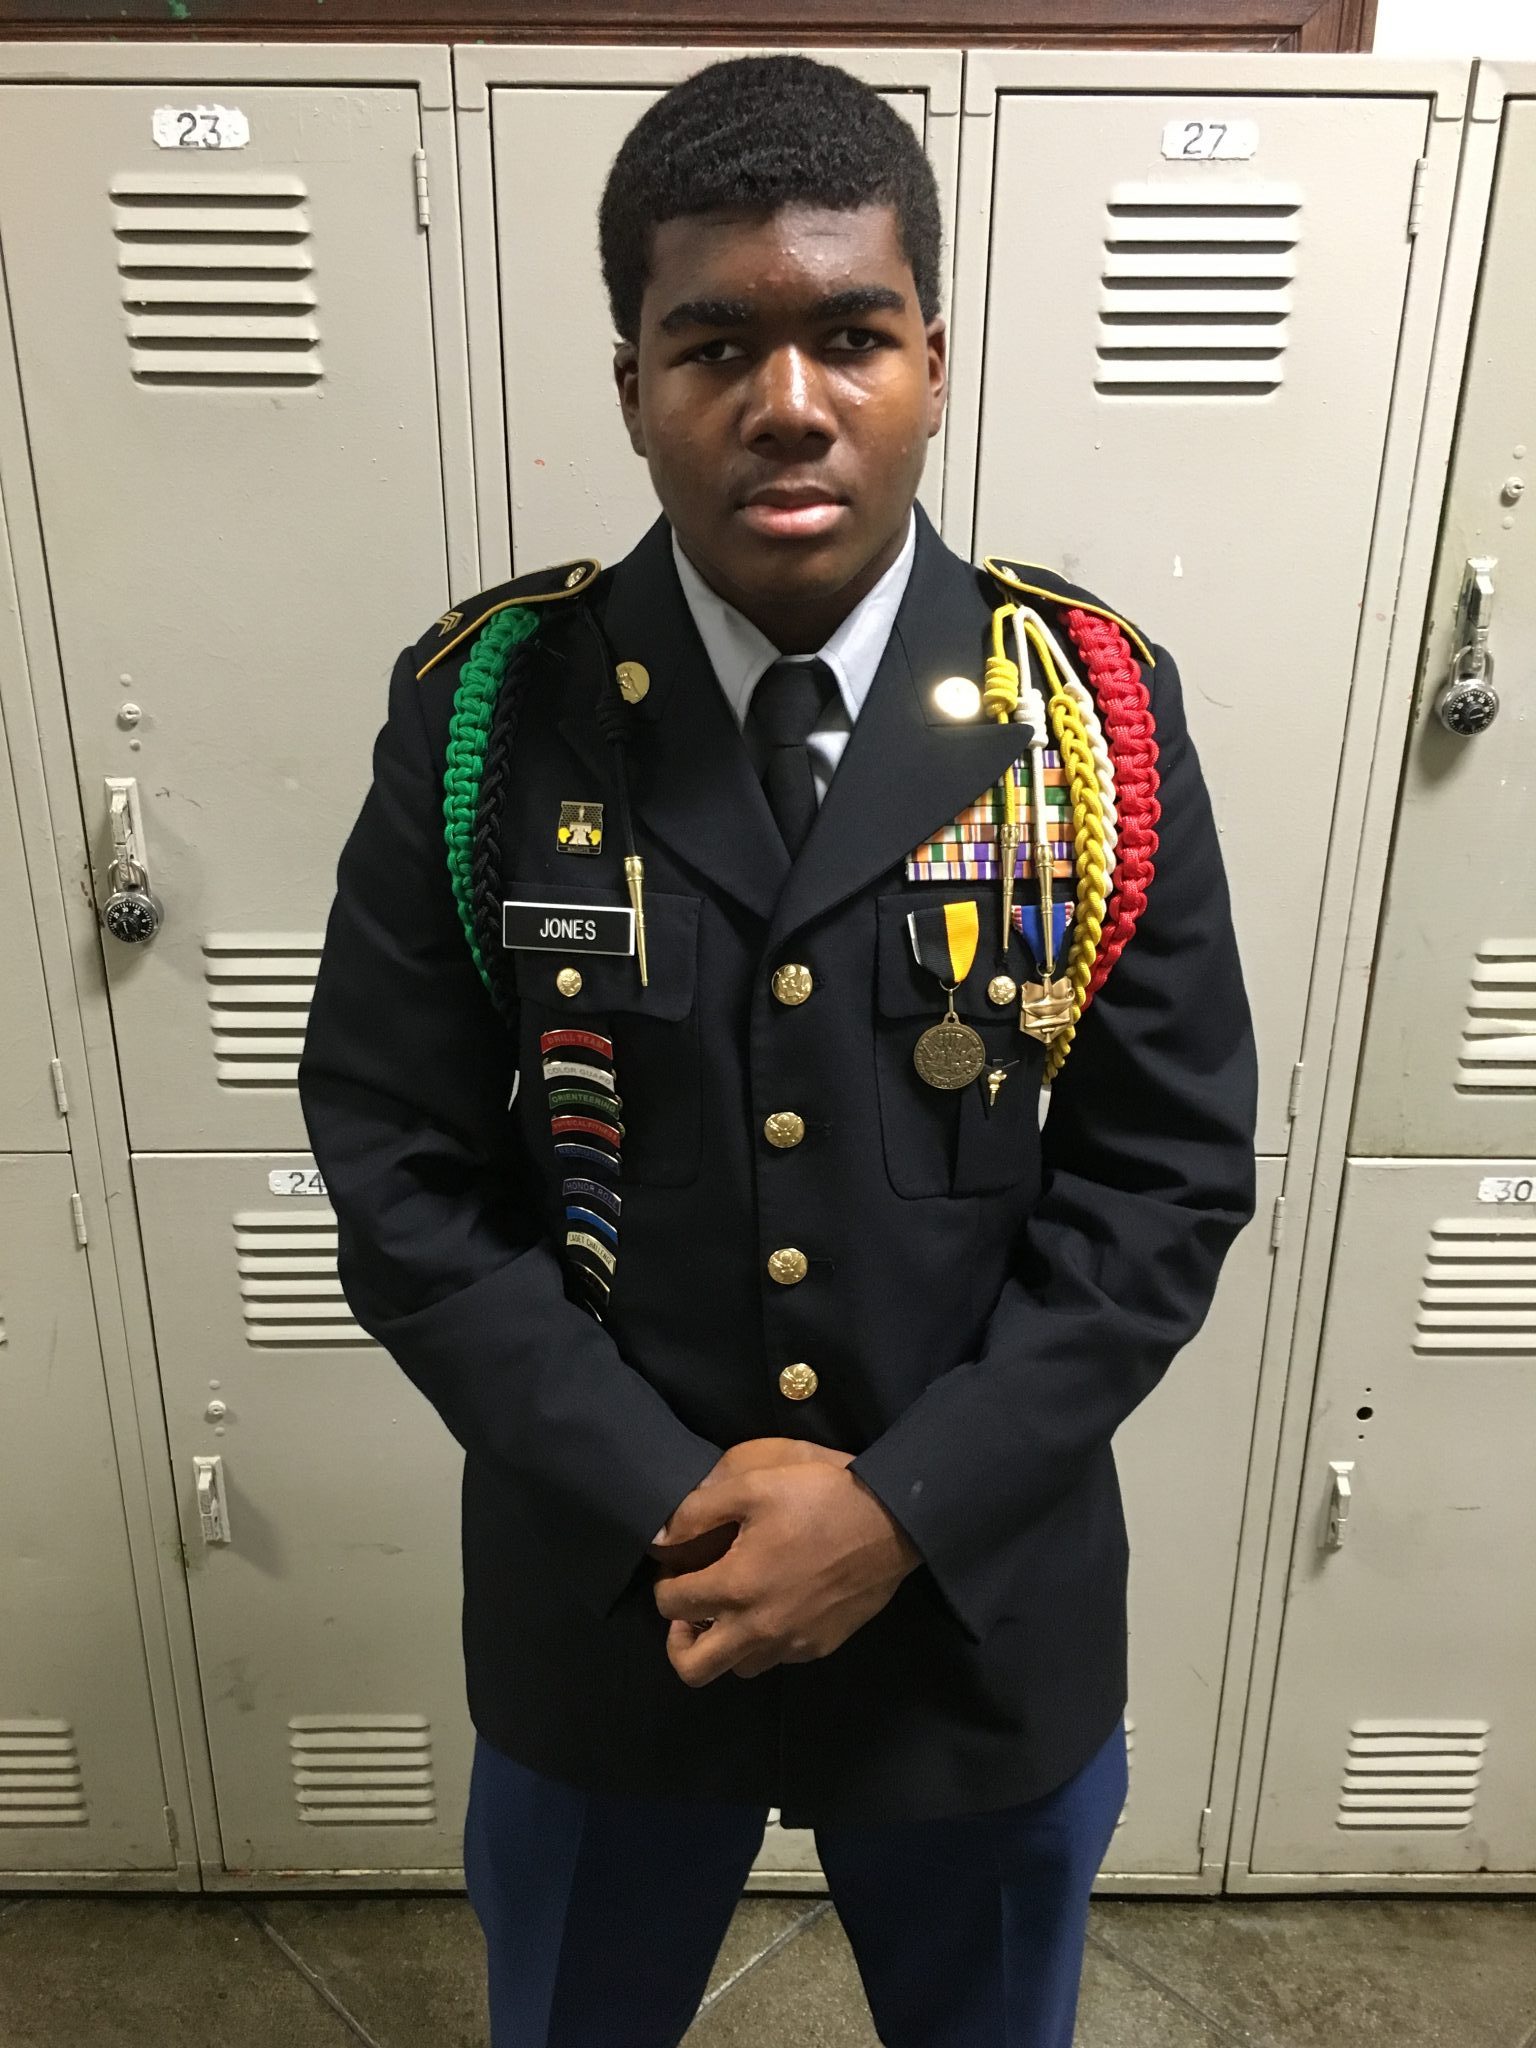 Cadet Jones wearing Class A Uniform